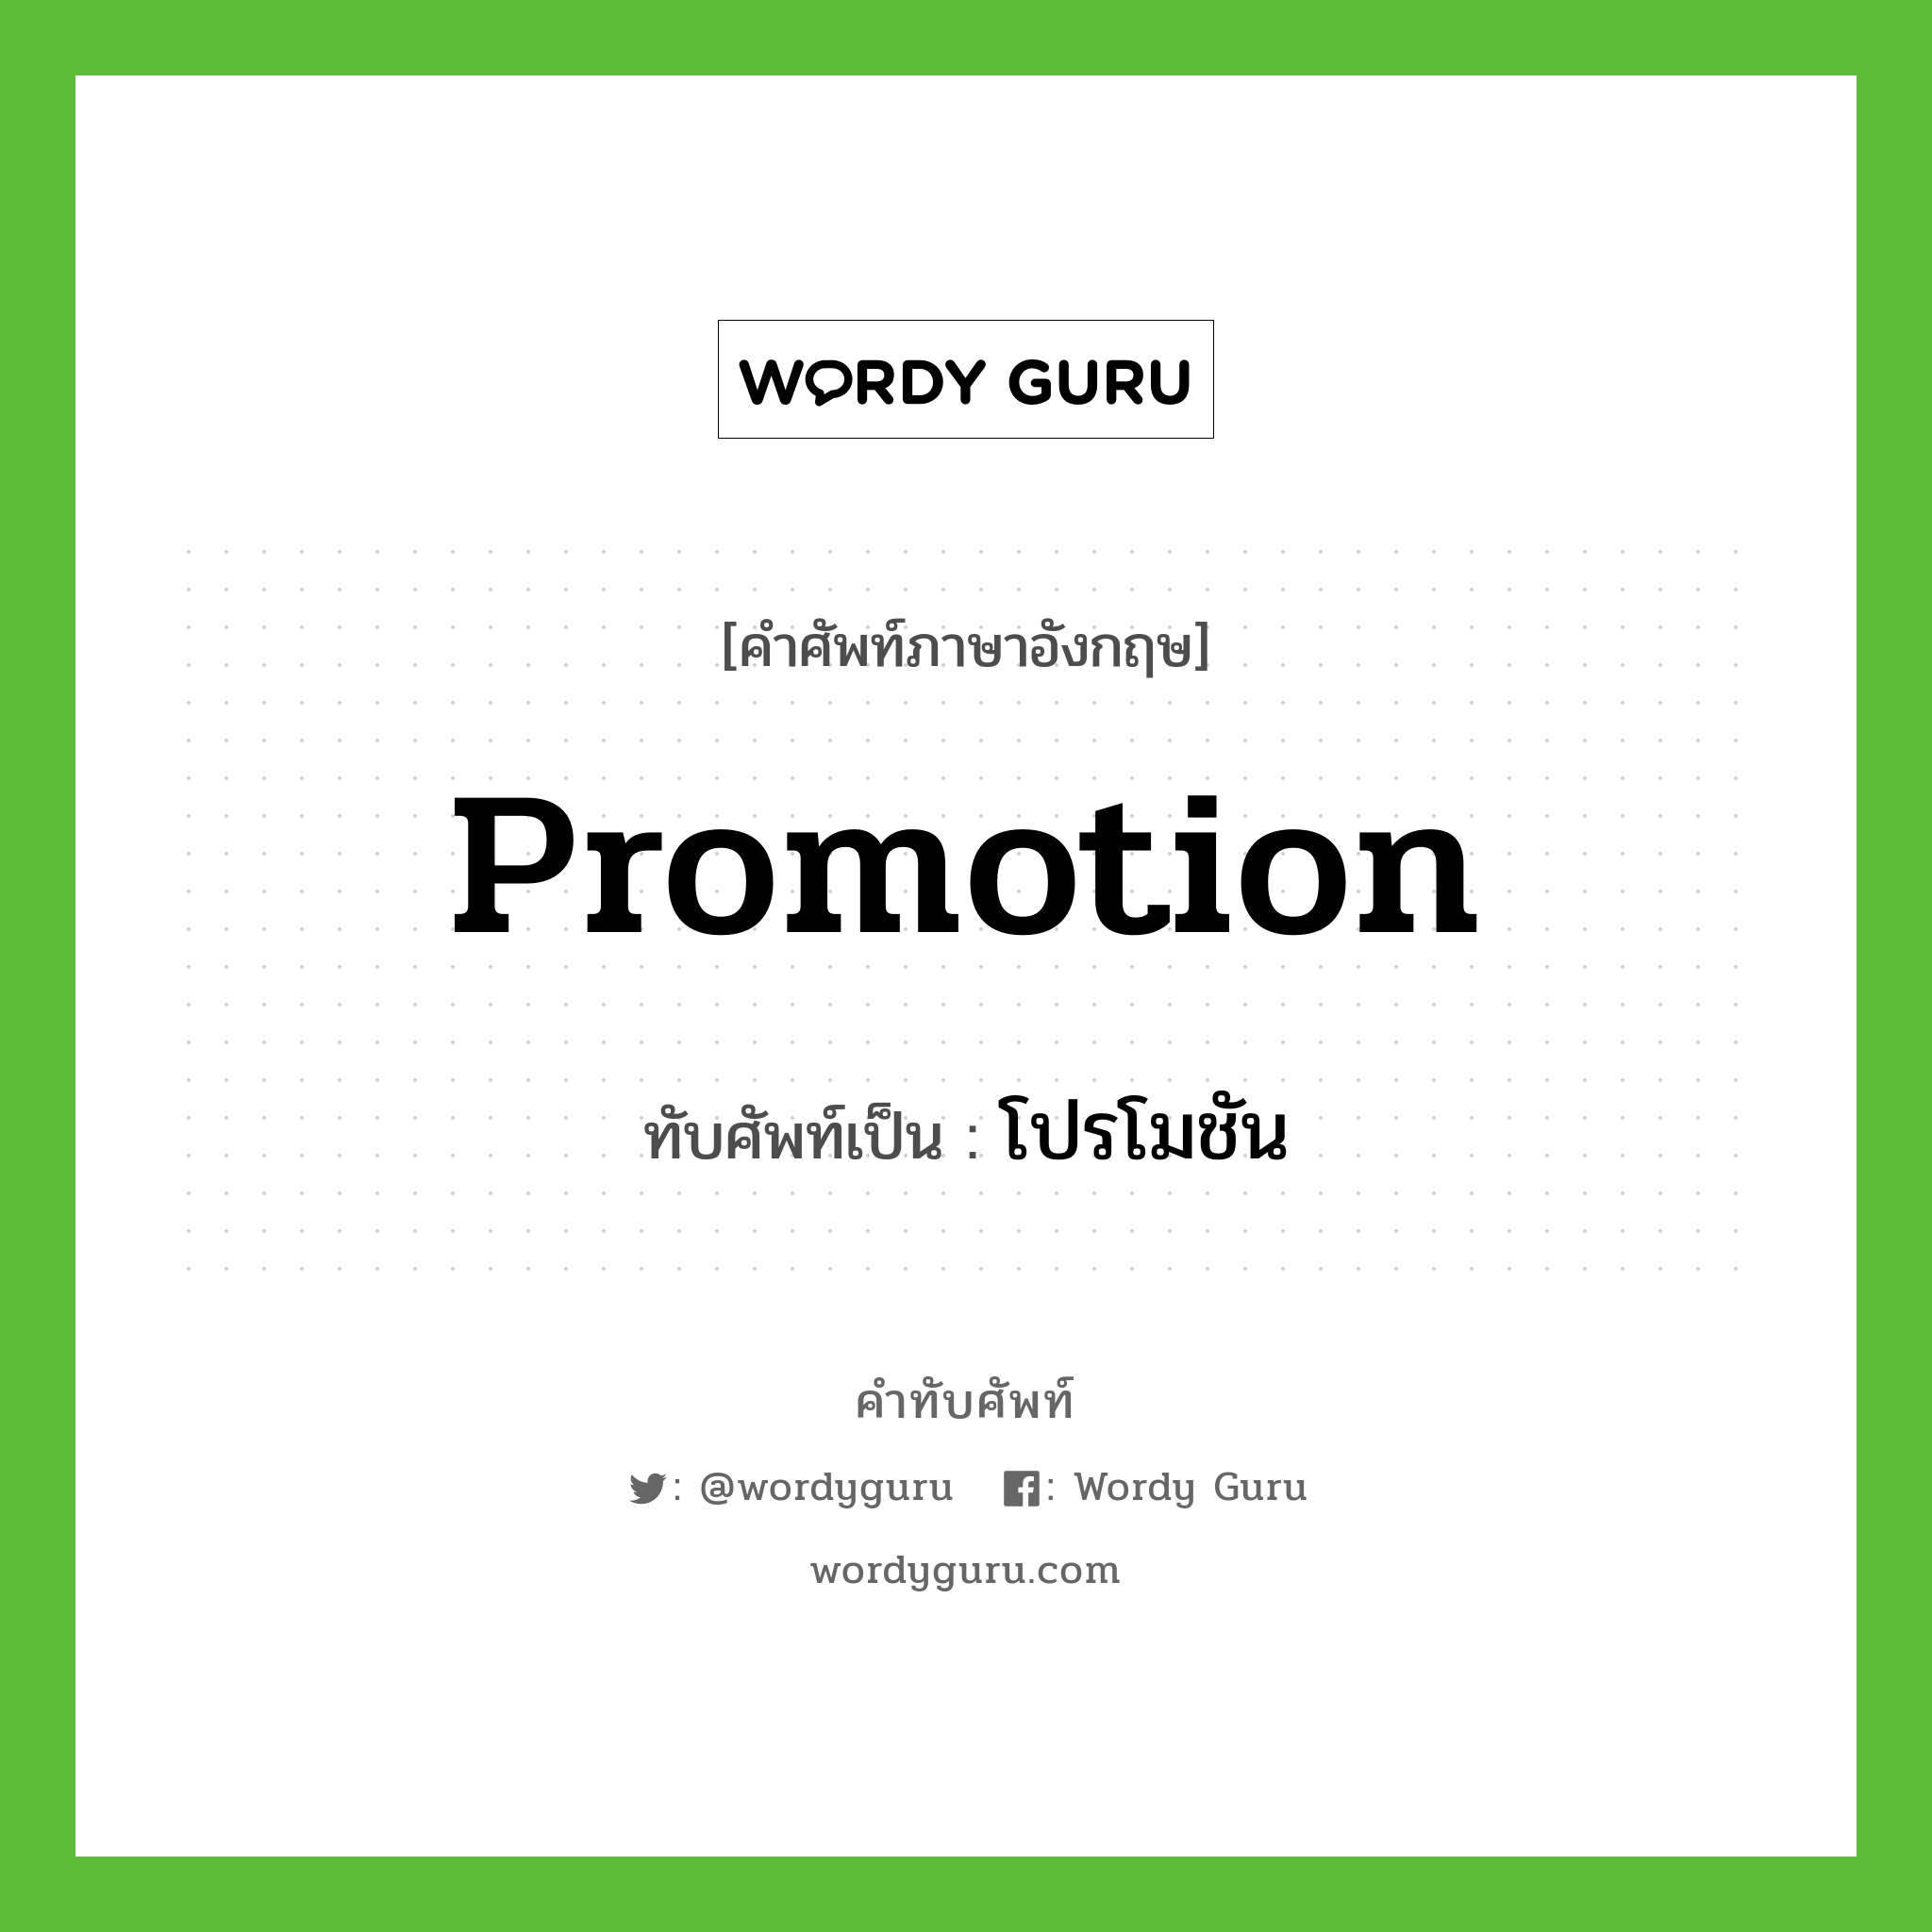 promotion เขียนเป็นคำไทยว่าอะไร?, คำศัพท์ภาษาอังกฤษ promotion ทับศัพท์เป็น โปรโมชัน